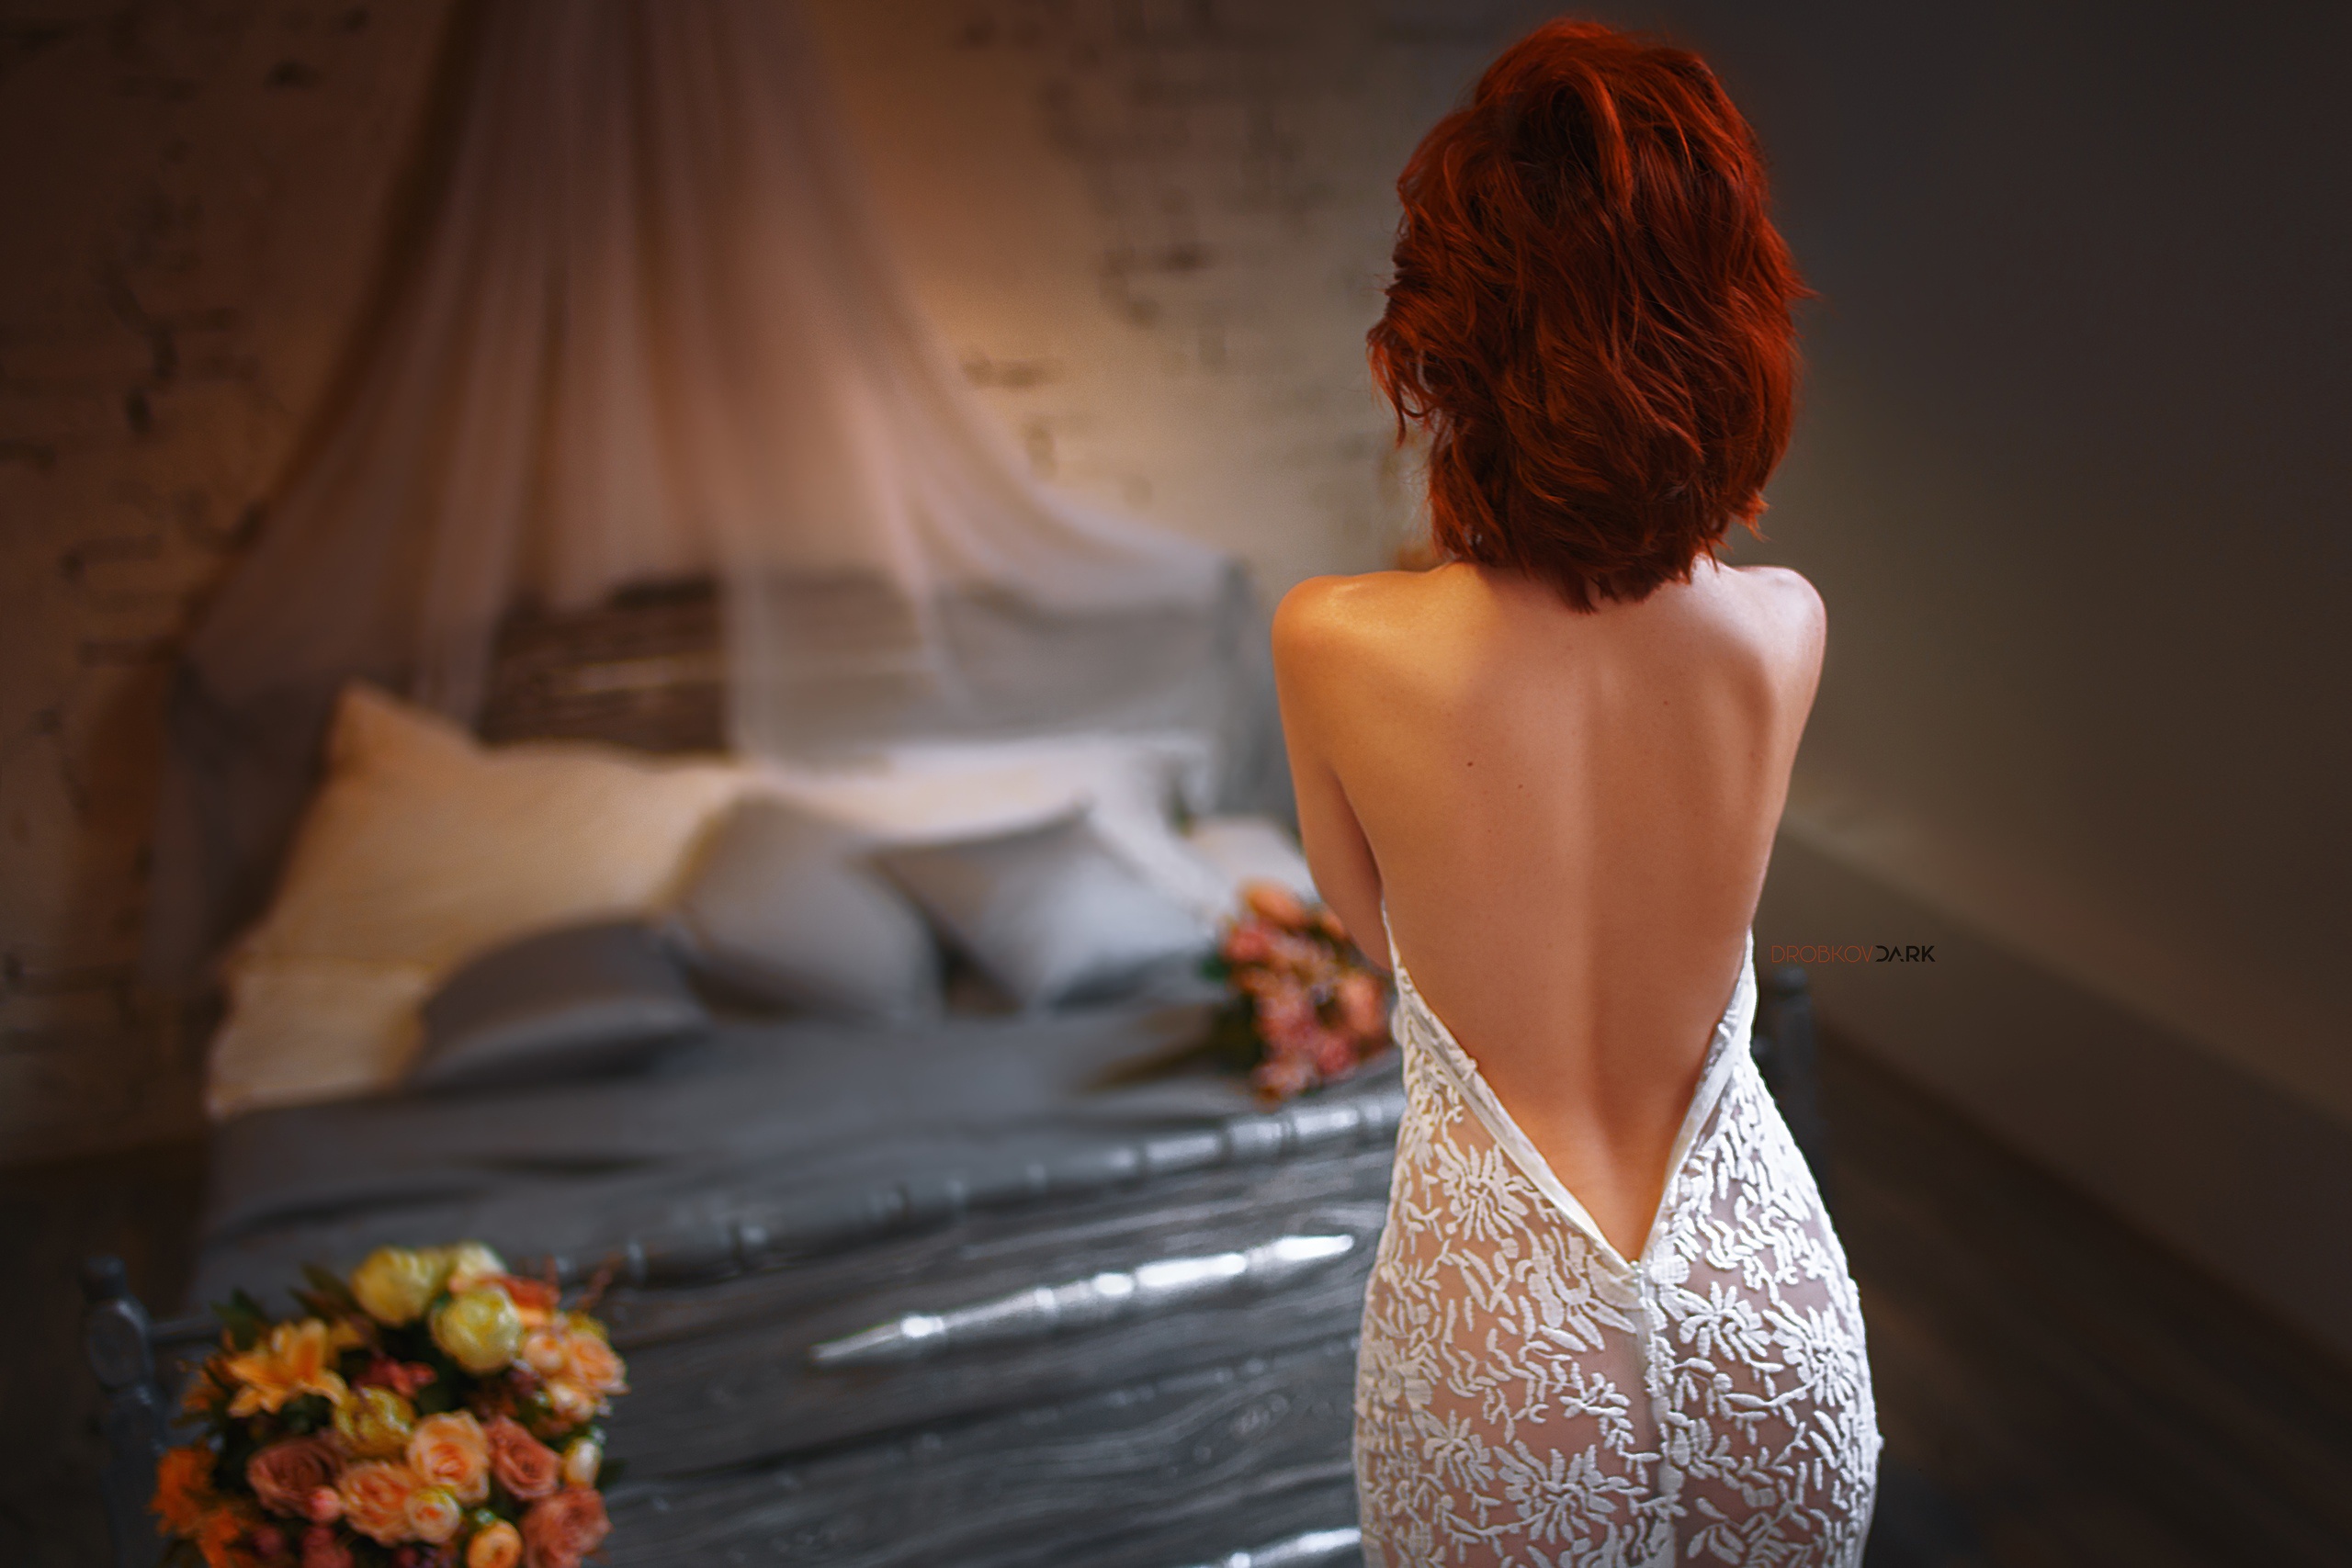 Снимая платье красотка показывала сексуальное тело